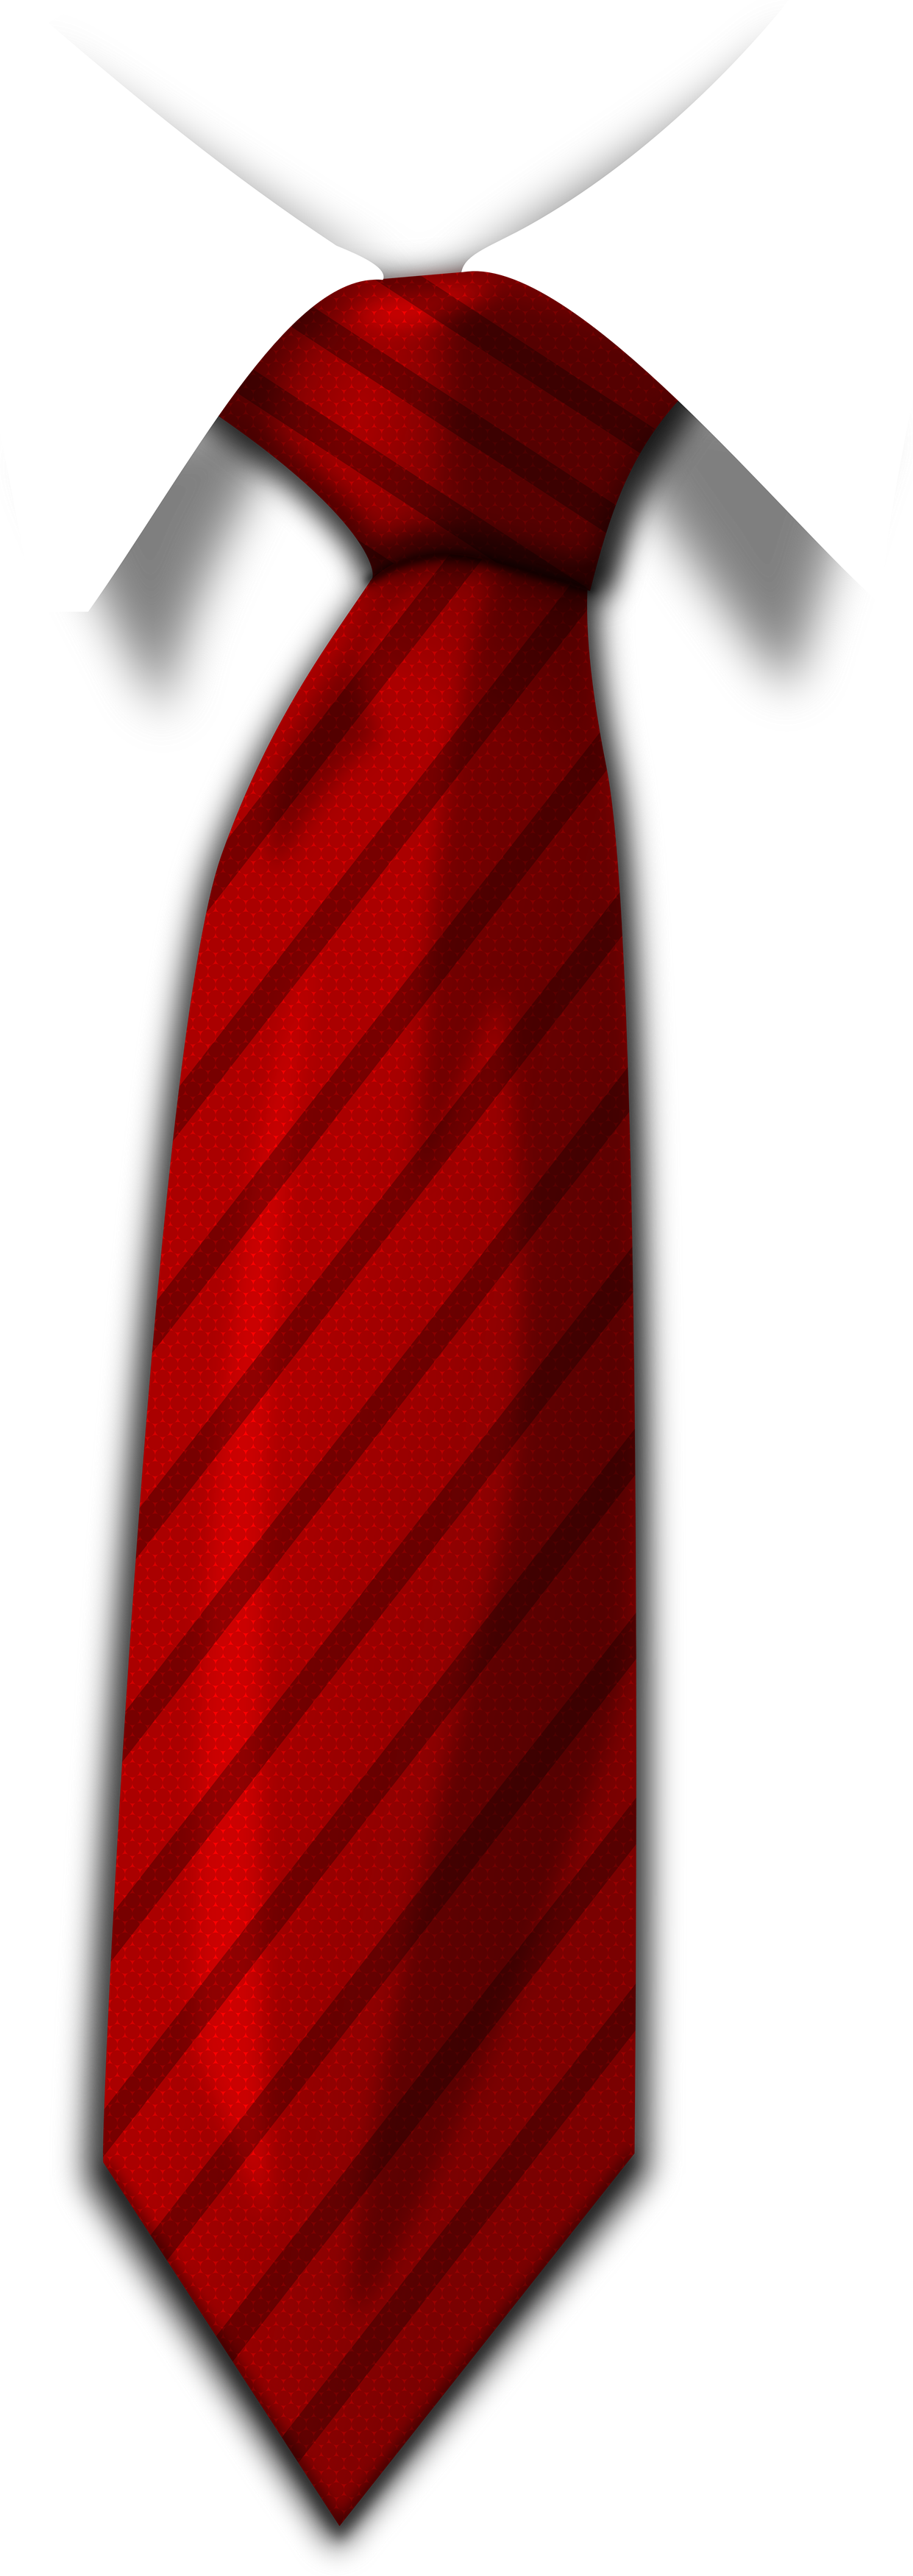 Detail Image Of Tie Nomer 23